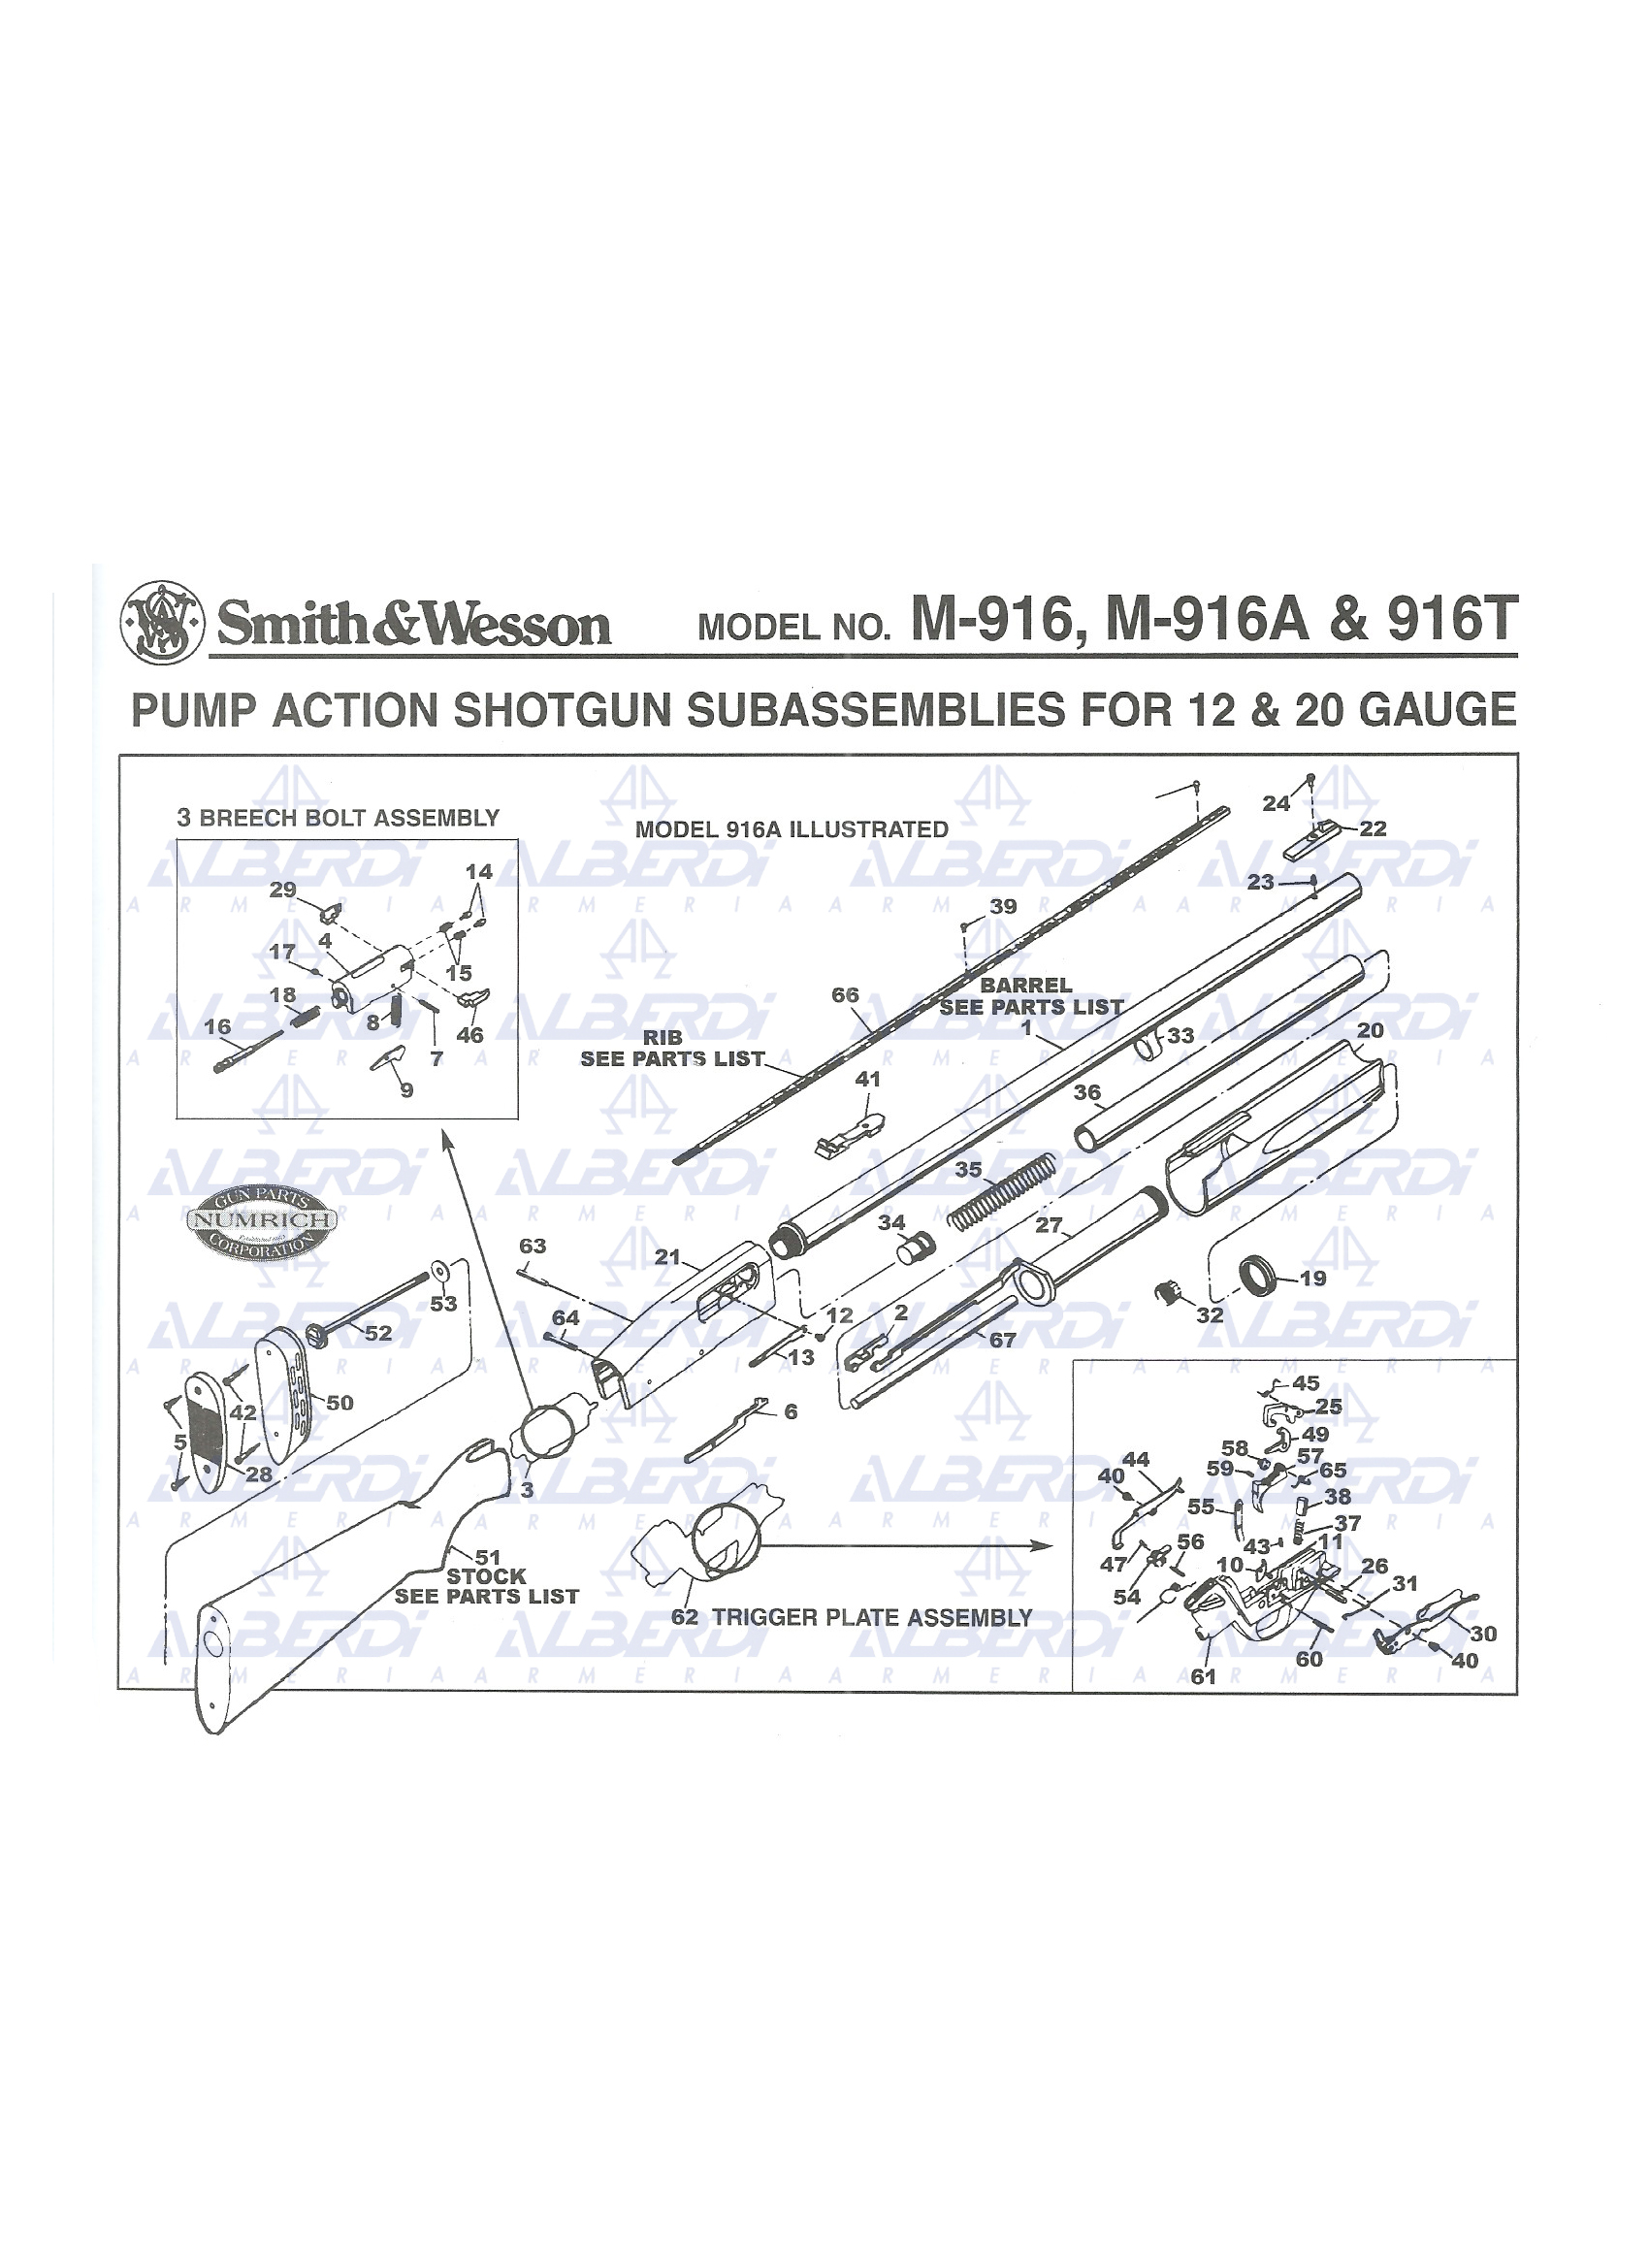 Pizas recambio para escopeta semiautomatica SMITH-WESSON modelo 916A